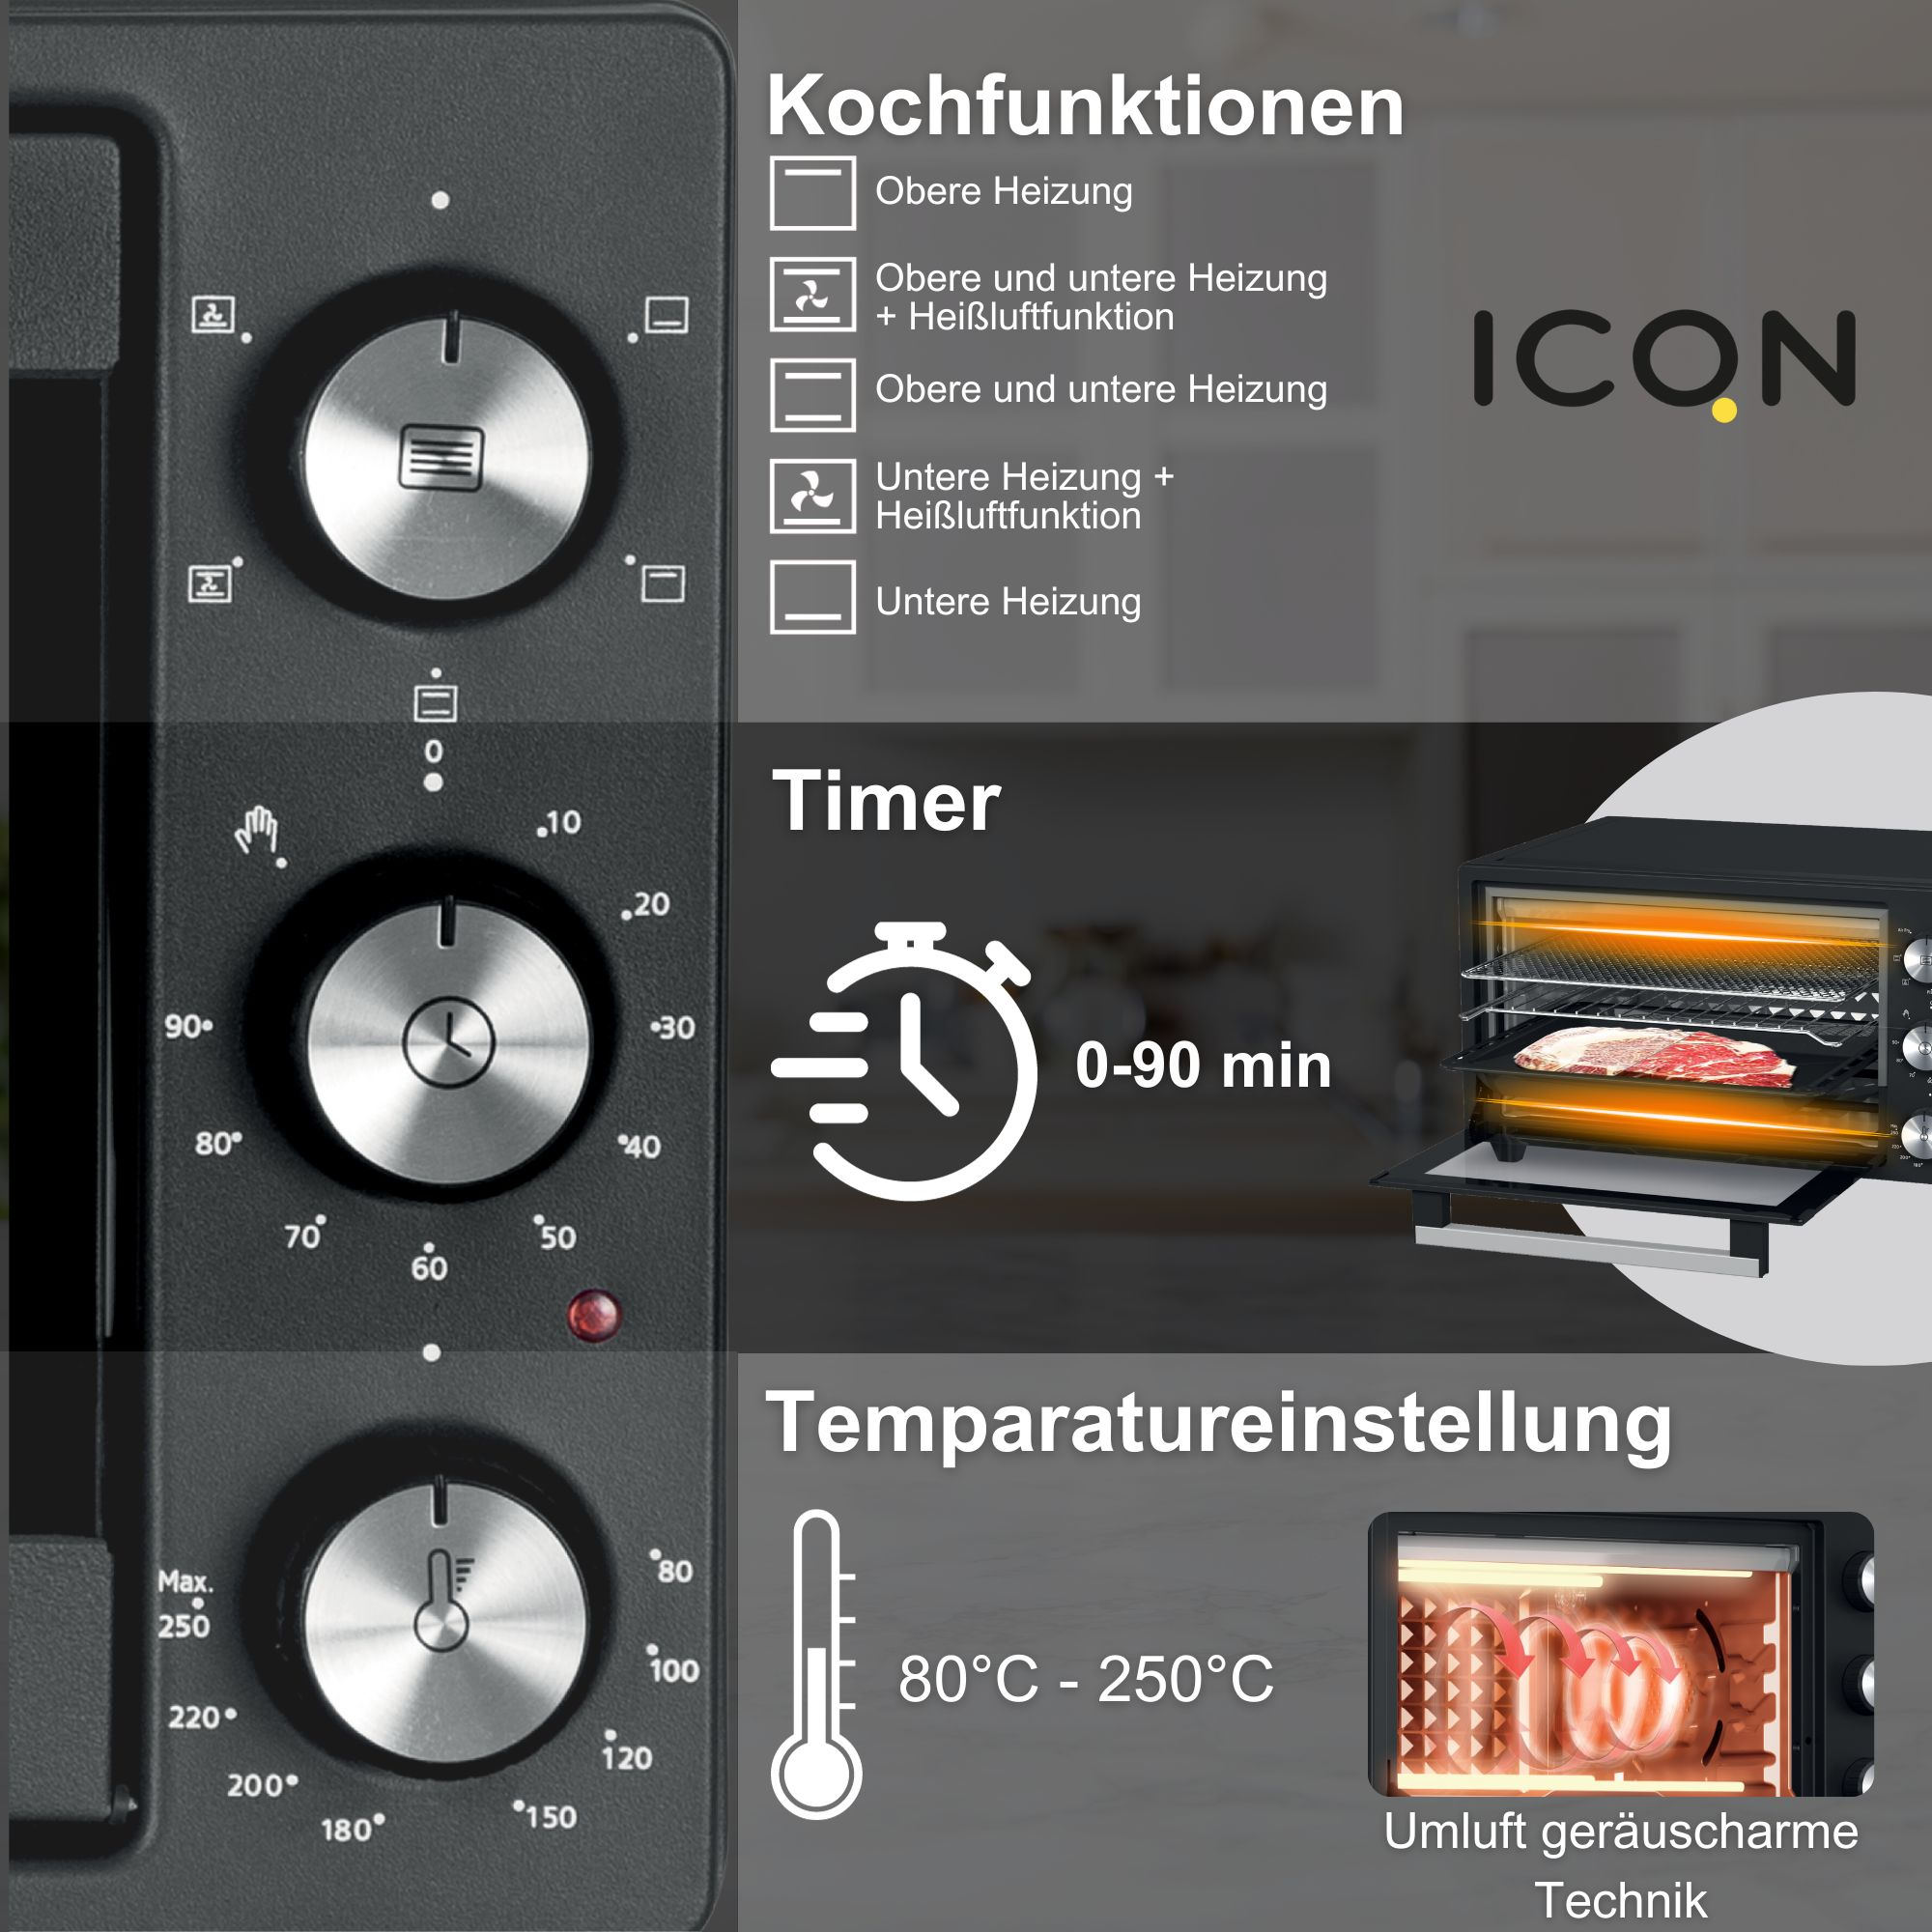 Grill-Funktion, 5 1500 80°-250°C, W, Timer 20 L, 90 Min. Minibackofen ICQN